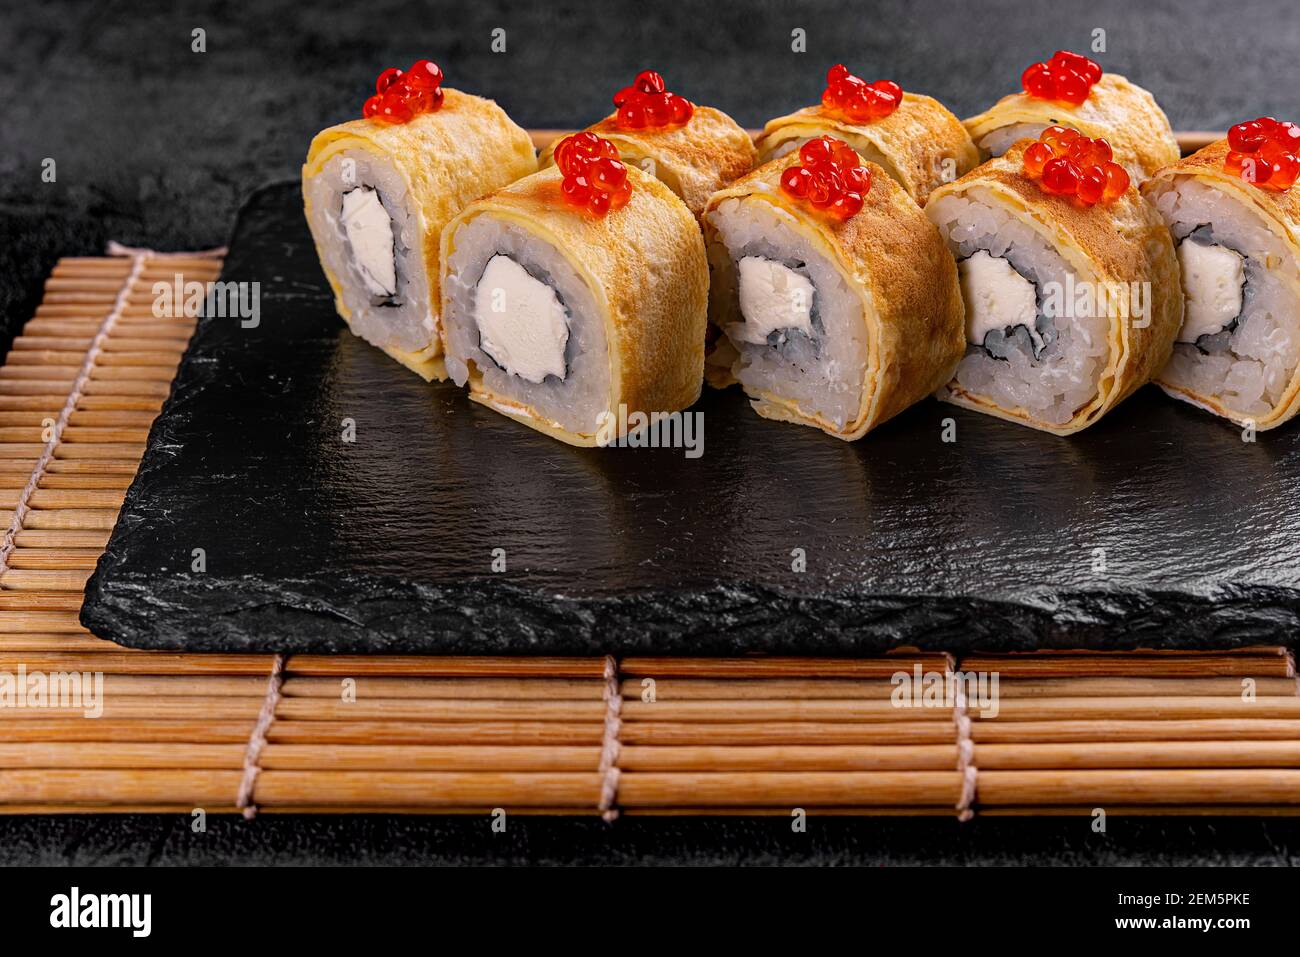 japanese sushi food Stock Photo